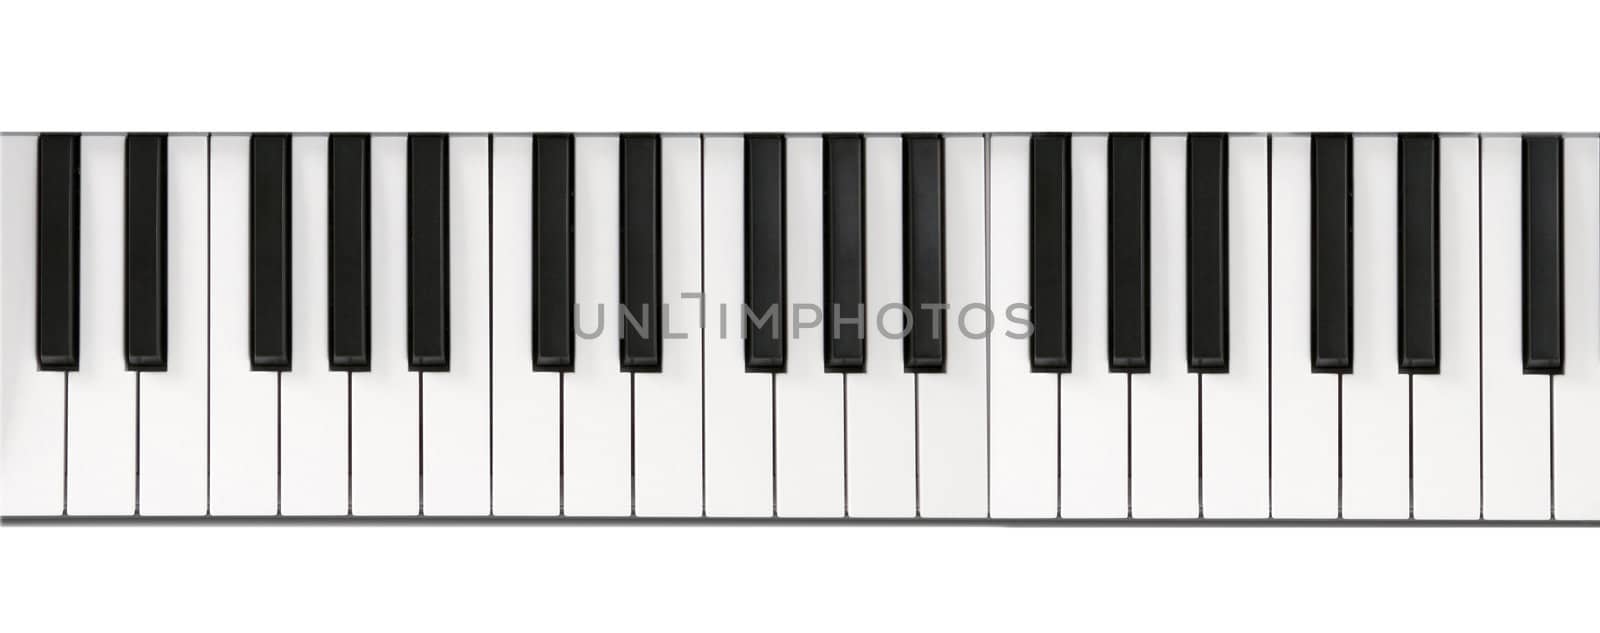 Piano keyboard close-up by ozaiachin